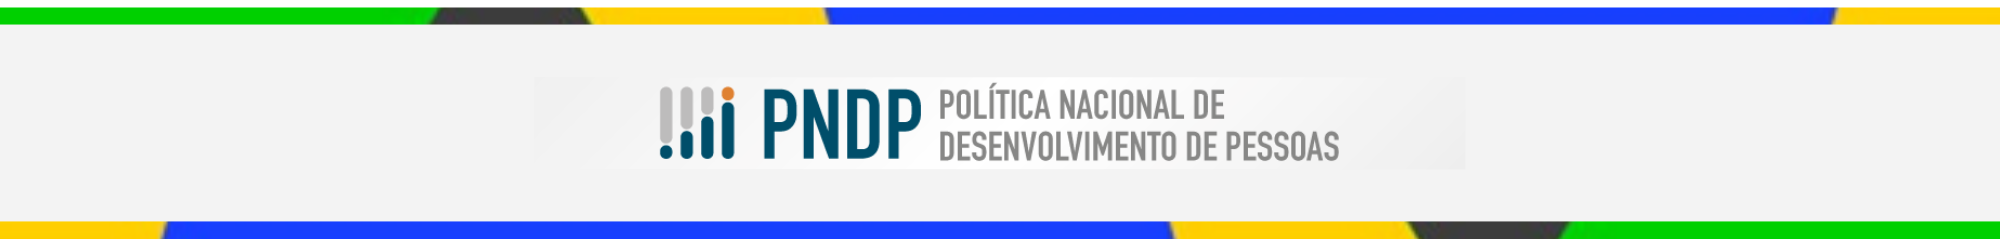 Capa página PNDP